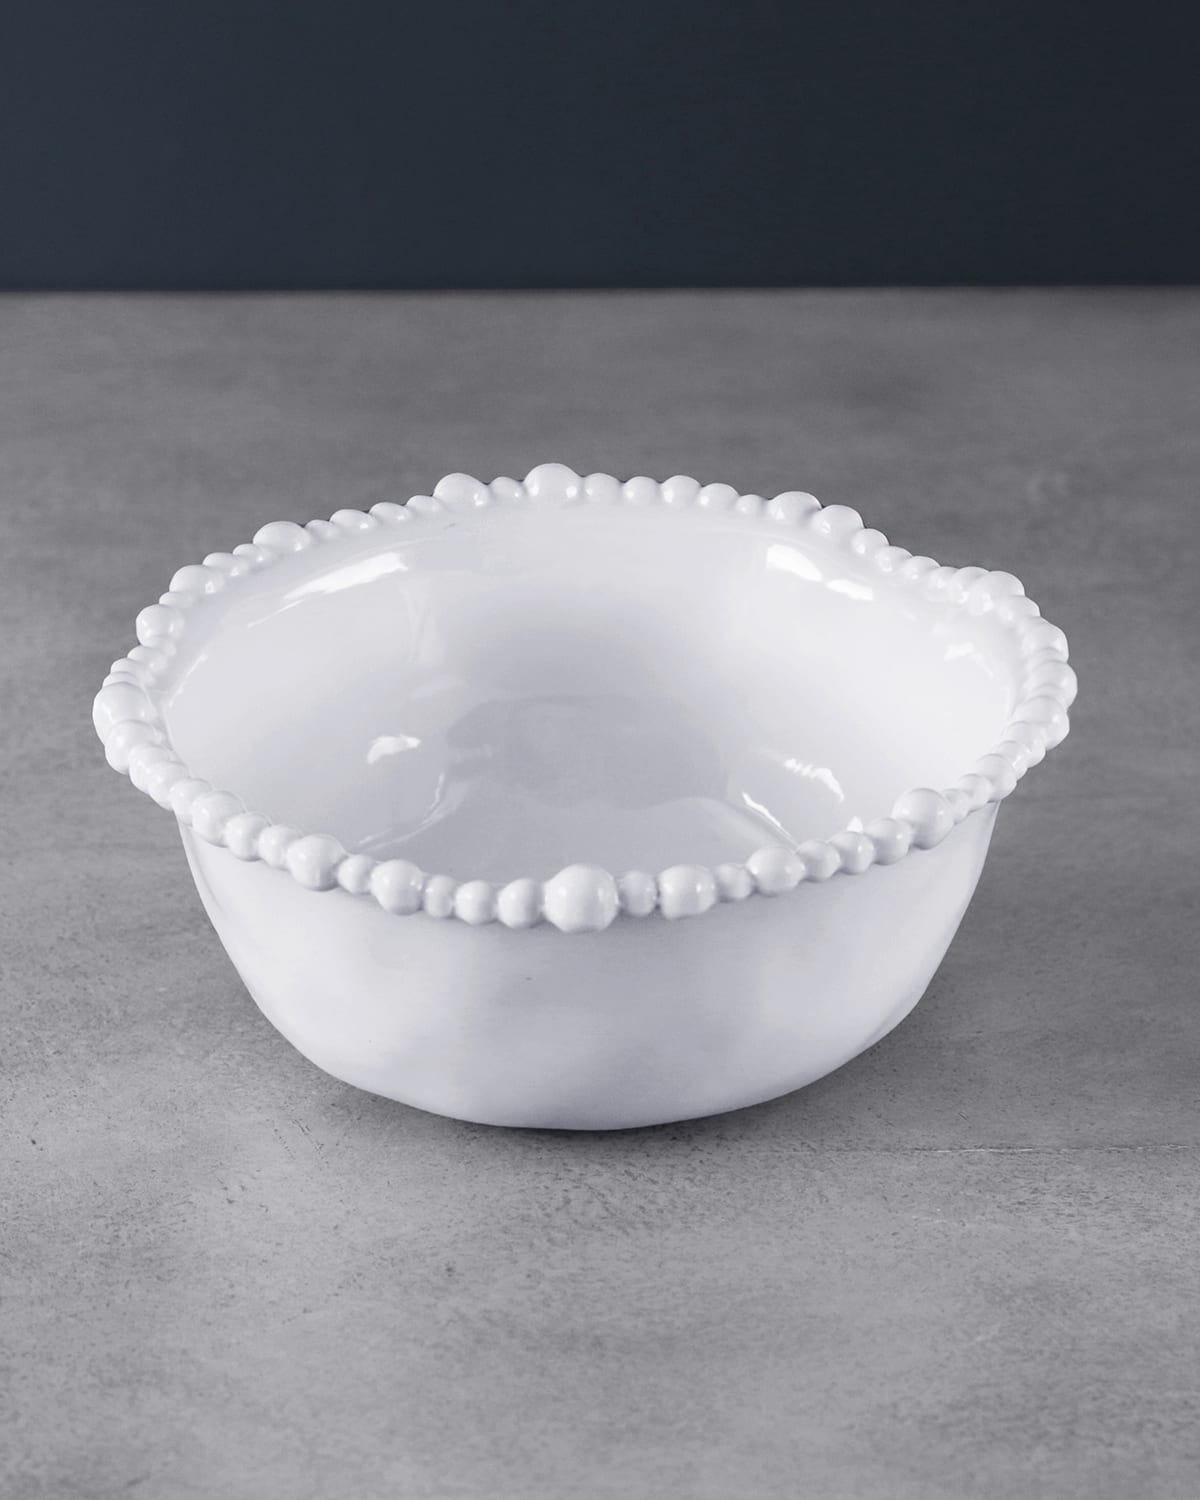 VIDA Alegria Cereal Bowls, Set of 4 (White)